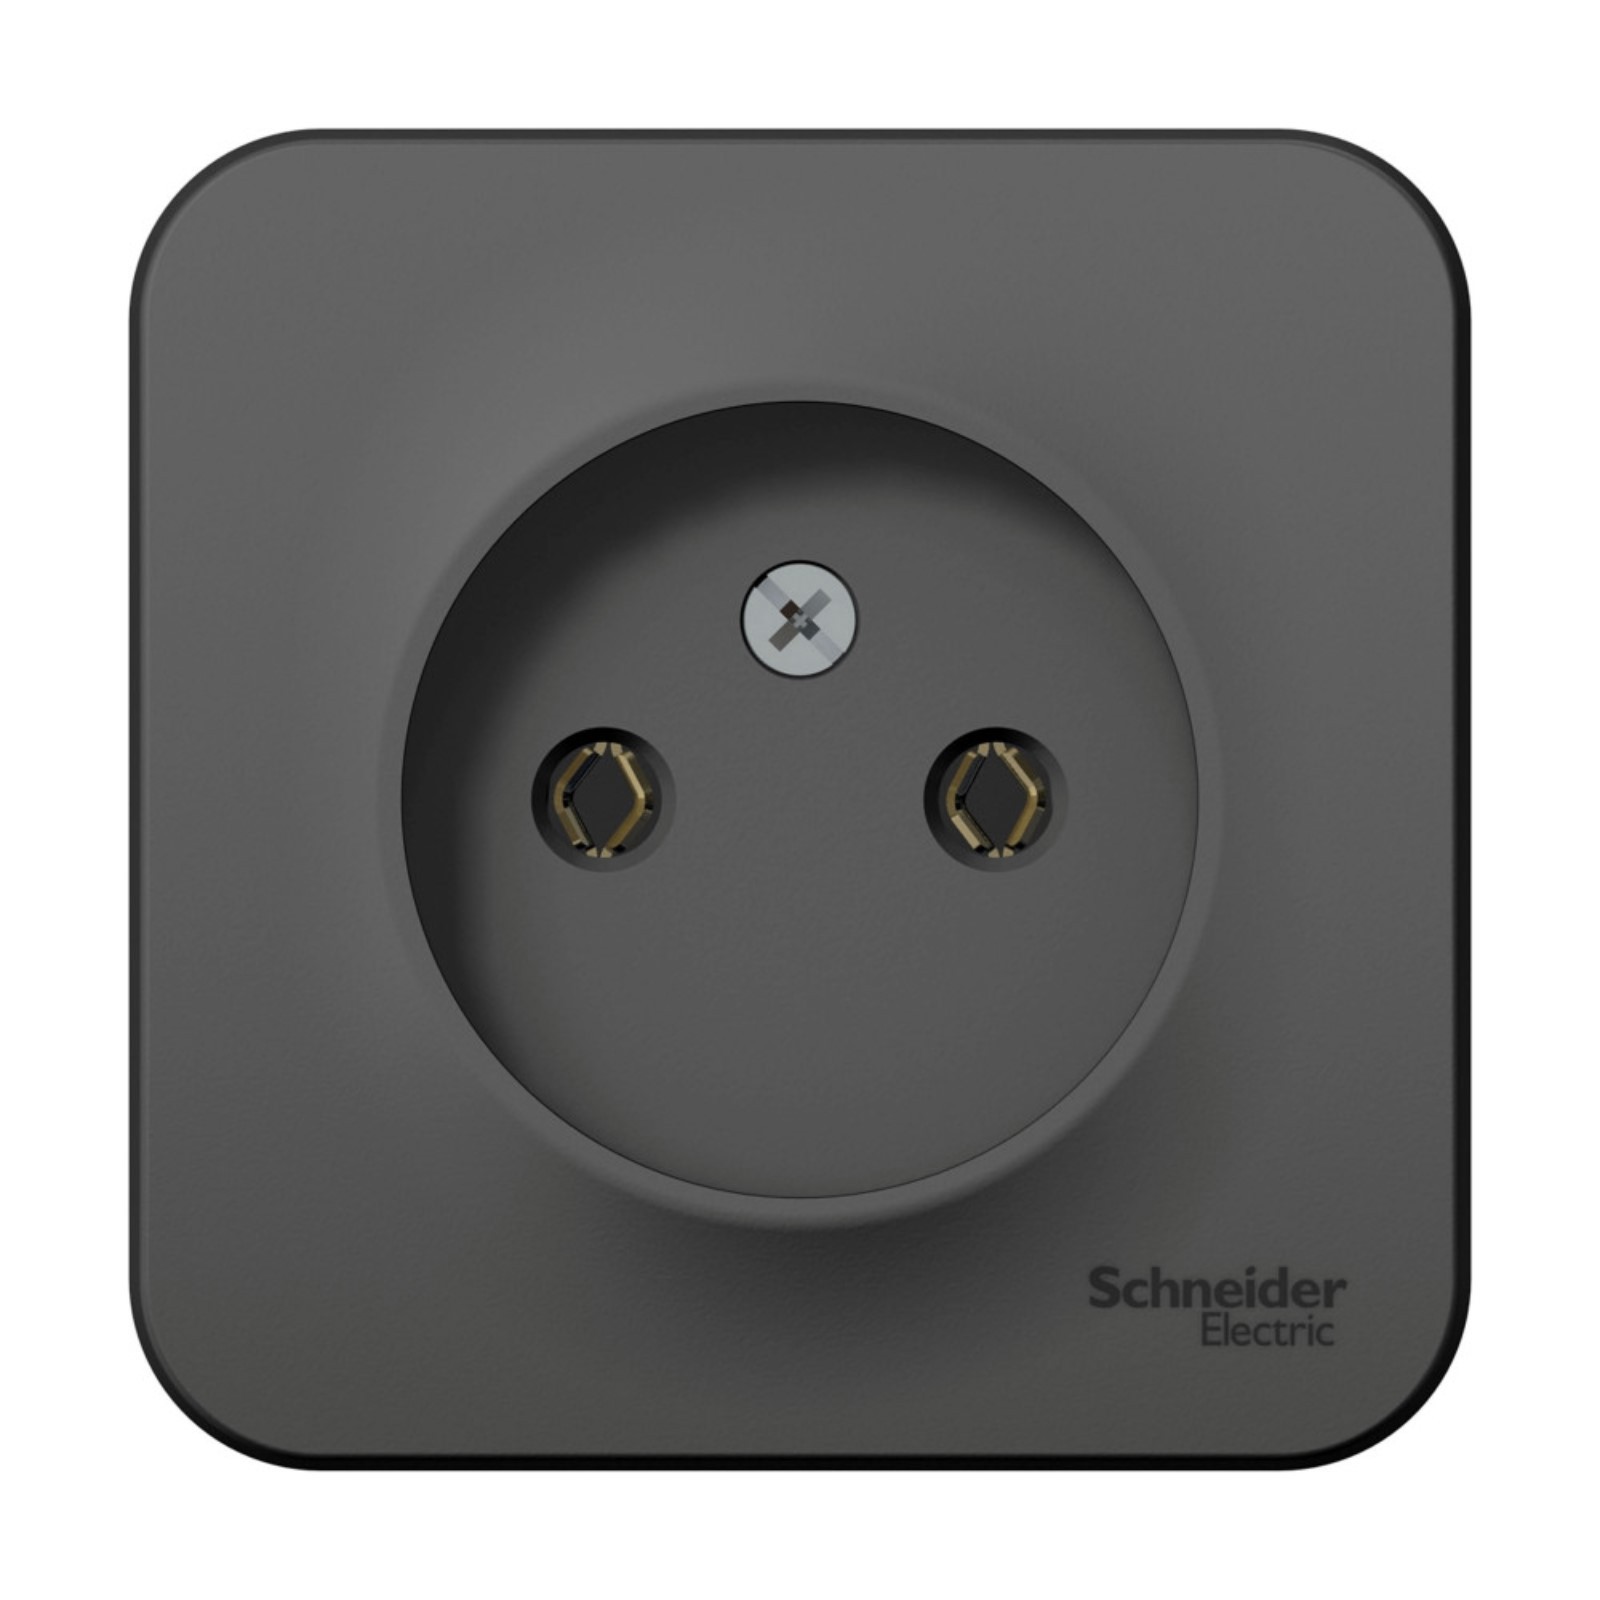  накладная Schneider electric Уют 7612648 цвет черный  .